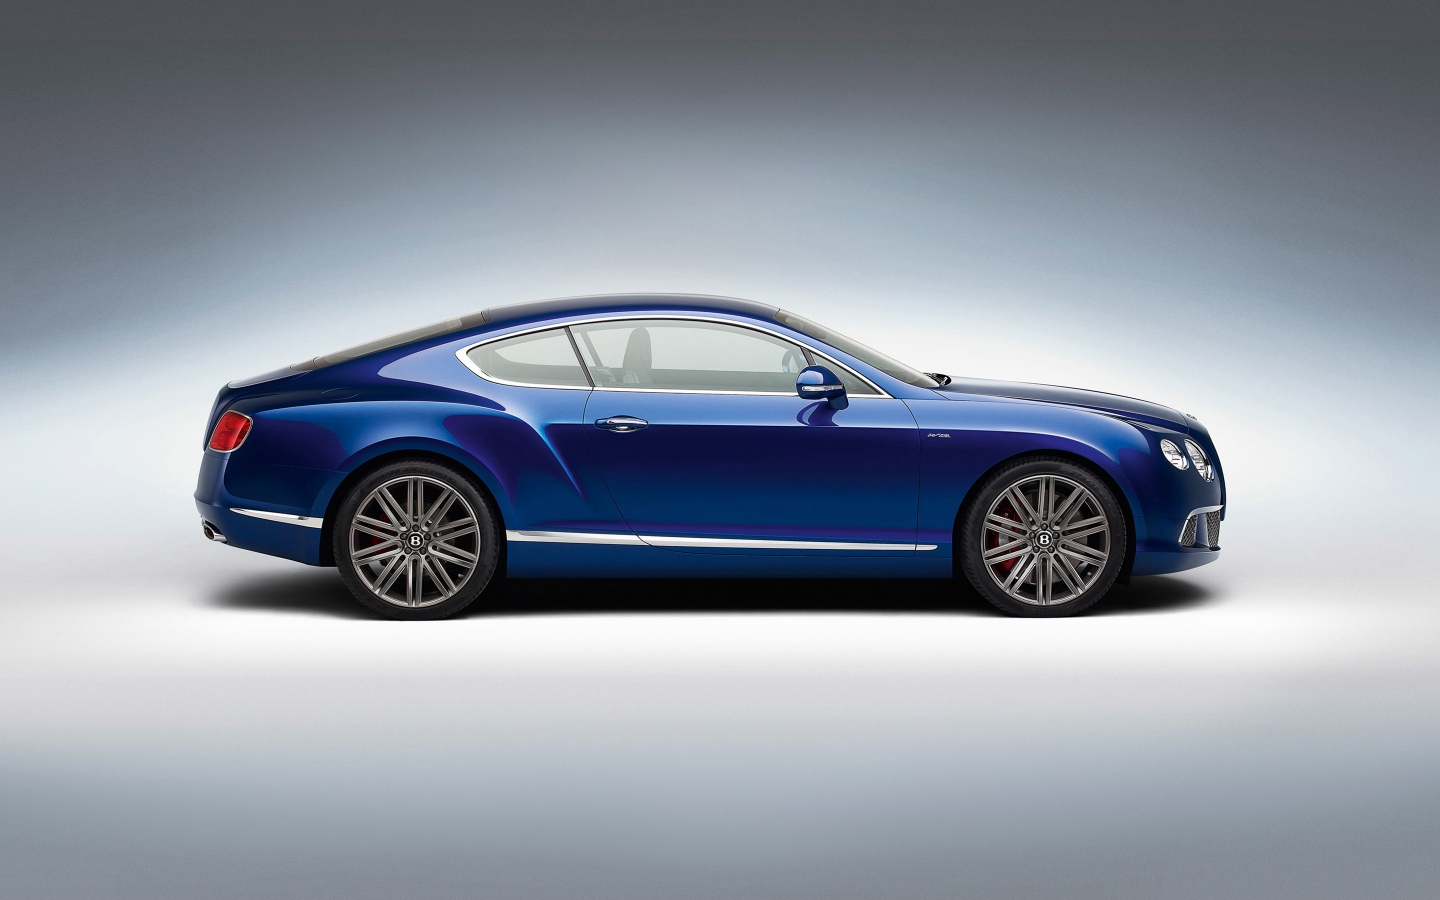 Blue Bentley GT Studio for 1440 x 900 widescreen resolution